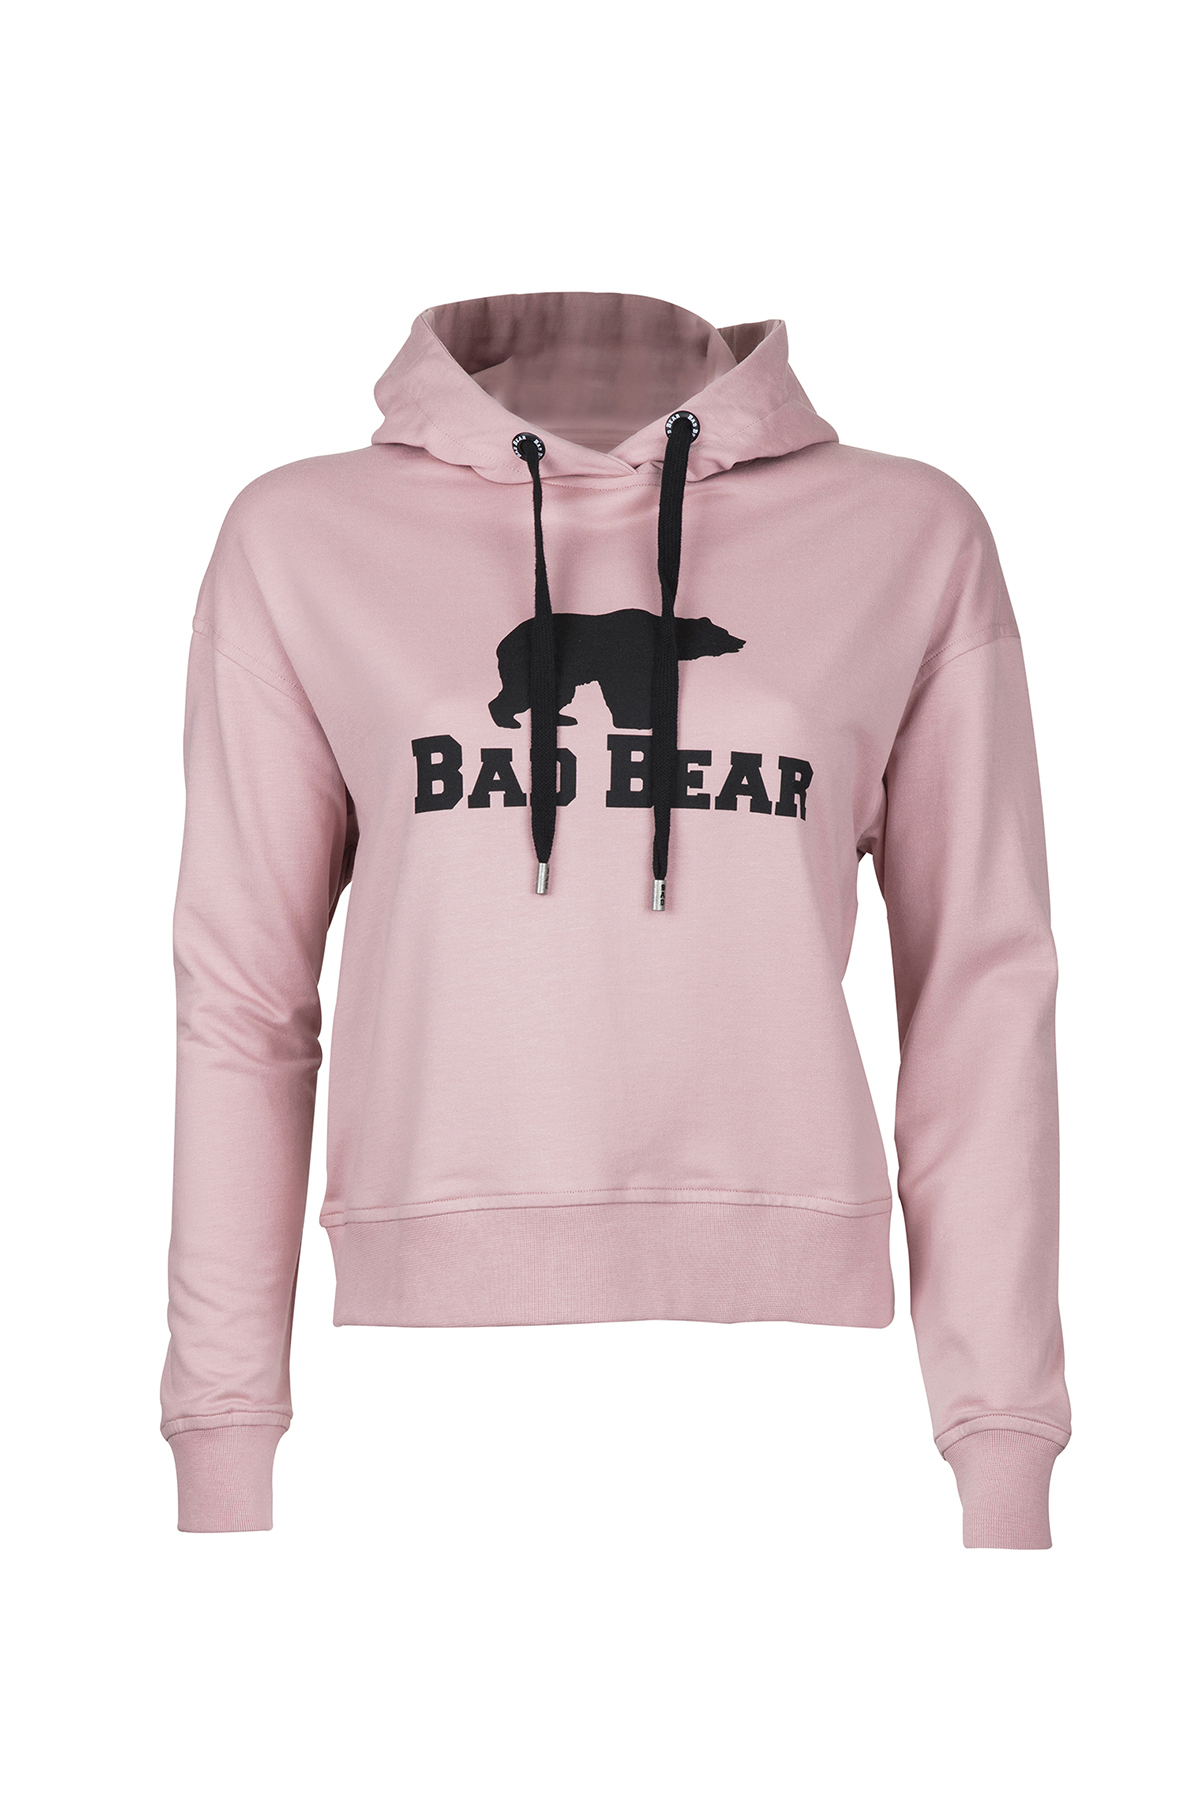 Bad Bear Kadın Pudra Pembe Sweatshırt Bad Bear CropBAD BEAR | Erkek ve  Kadın Giyim Online Alışveriş Sitesi